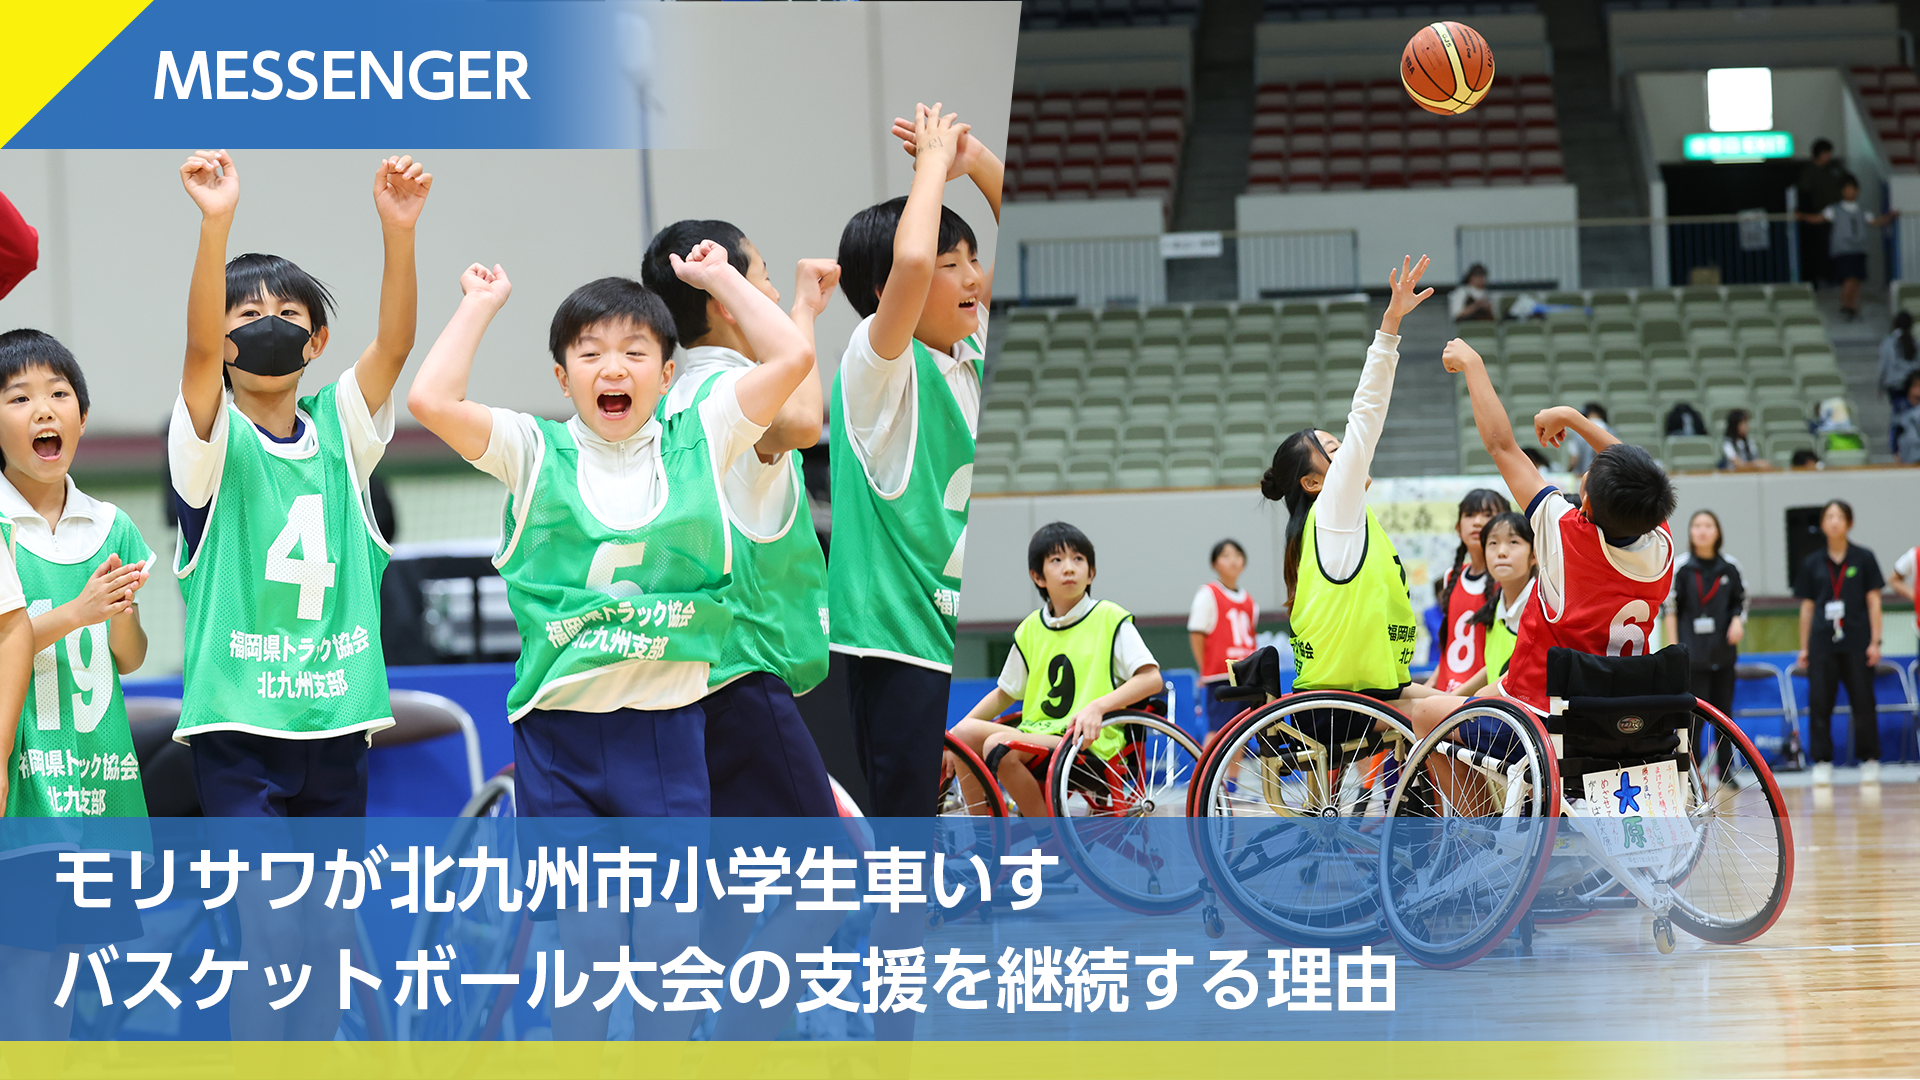 Vol.5 モリサワが北九州市小学生車いすバスケットボール大会の支援を継続する理由